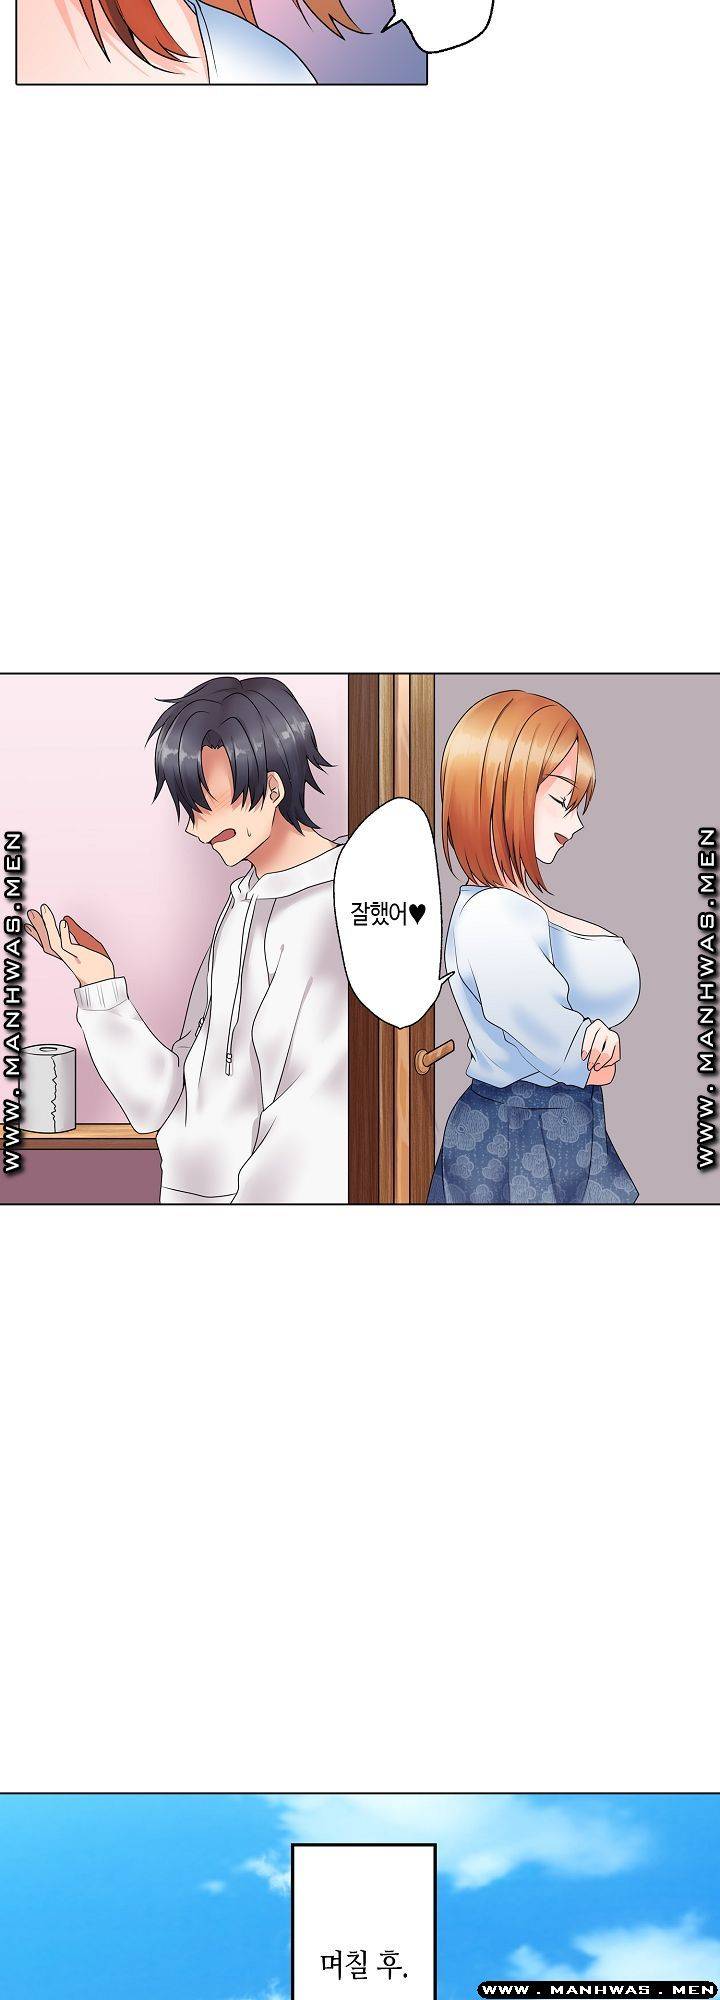 Read manga Temptation Sex Raw - 第13話 - Zq7cz0OATJNP5Xz - ManhwaXXL.com